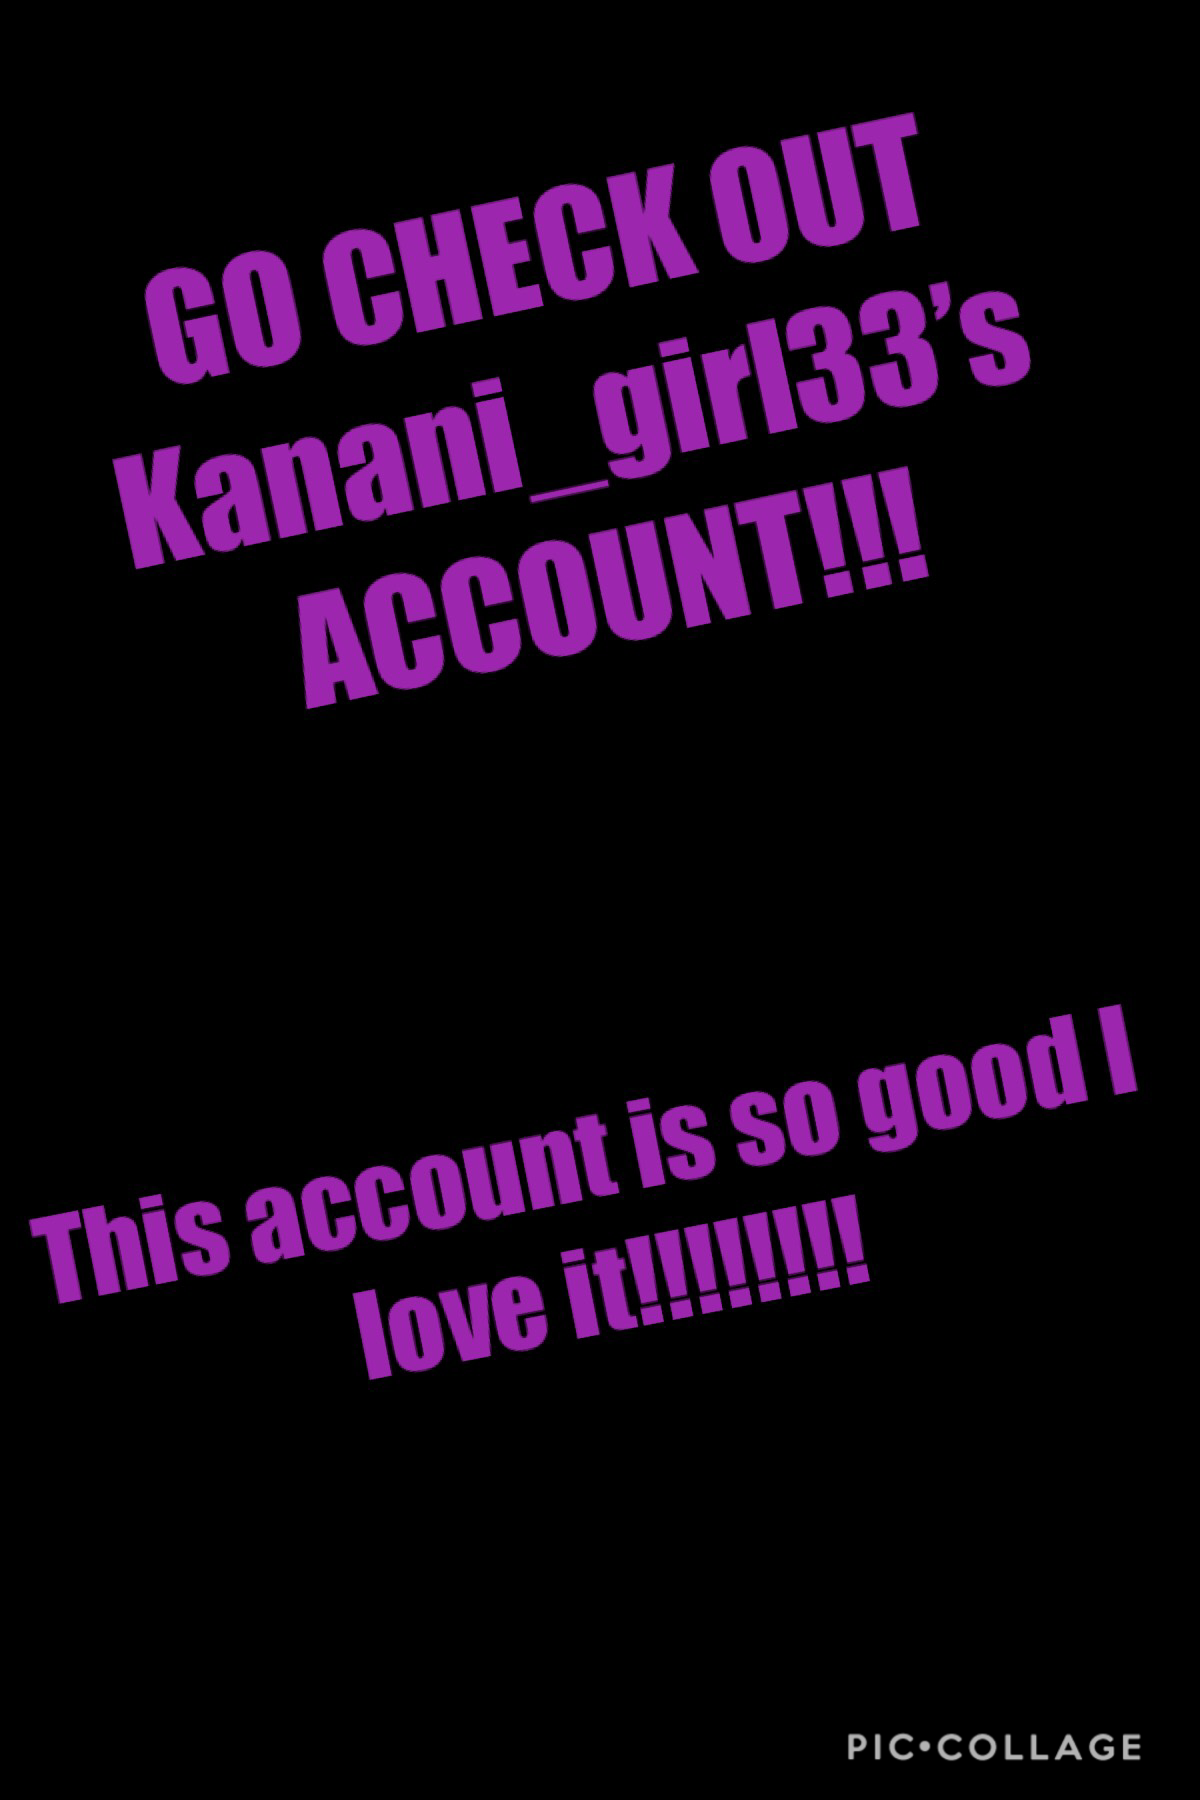 Go check out Kanani_girl33 account 